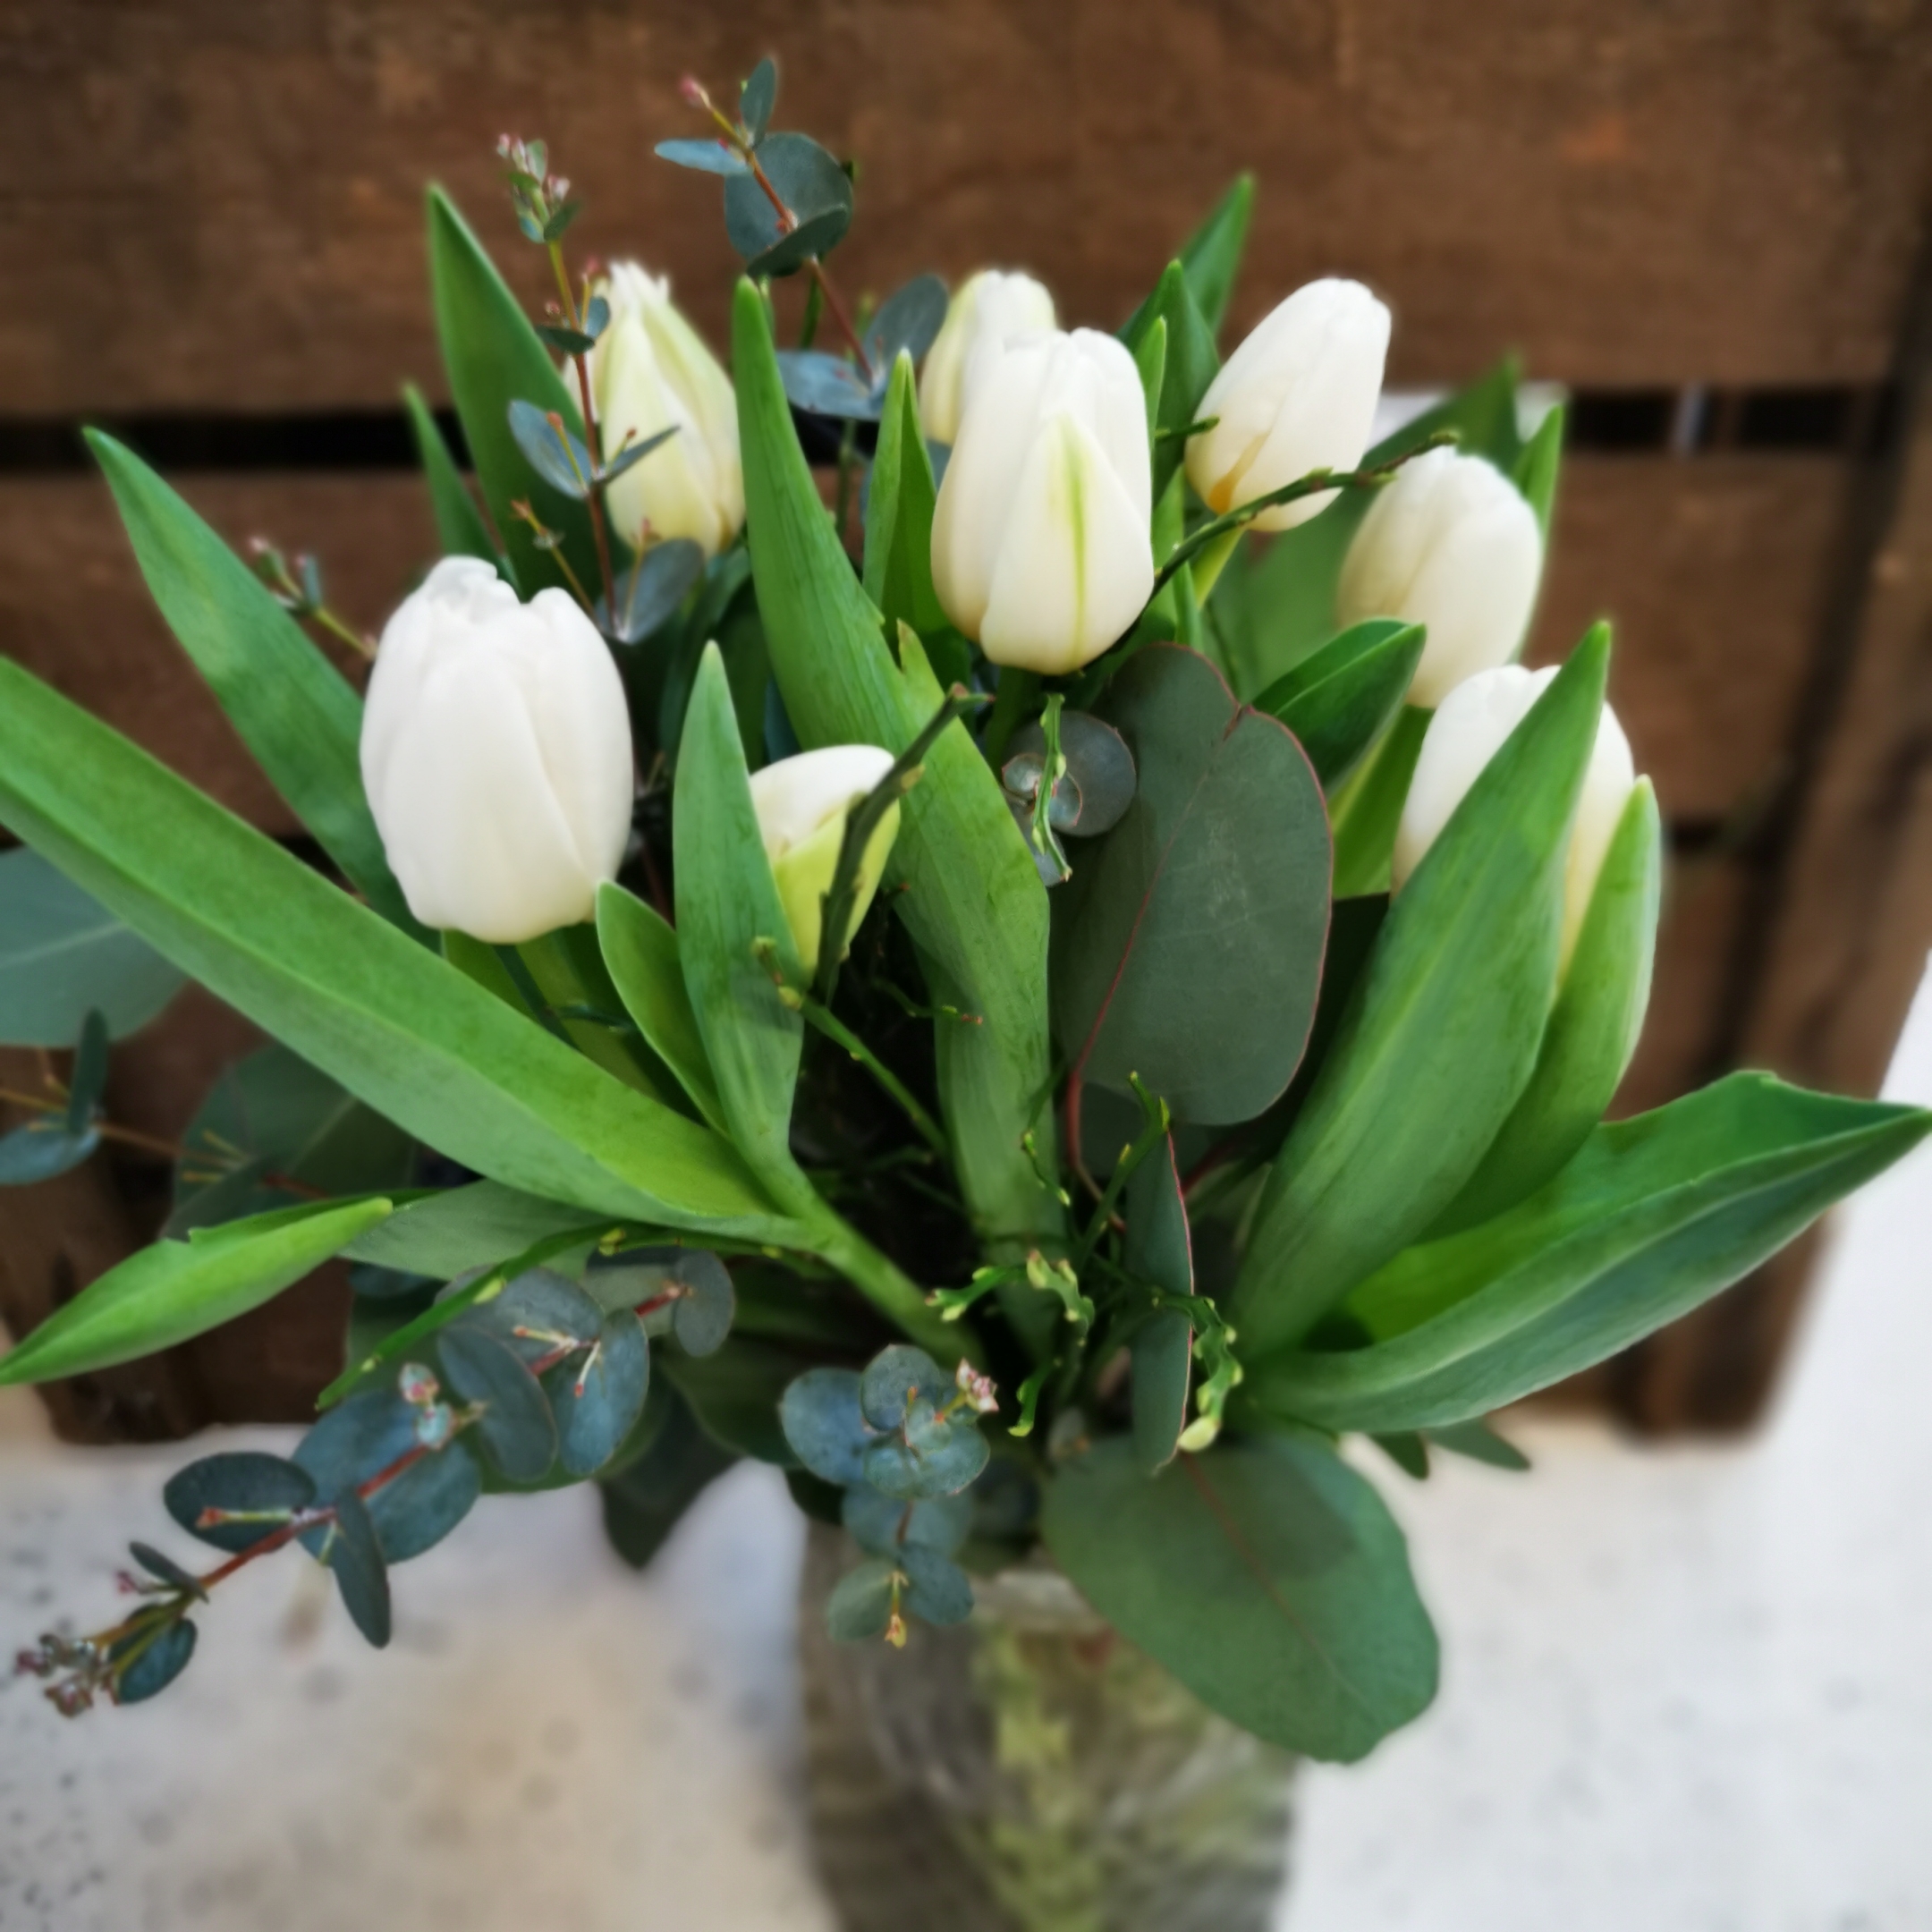 Tulpen Strauß mit 10 Tulpen in weiß inkl. passendes Beiwerk Bild 1